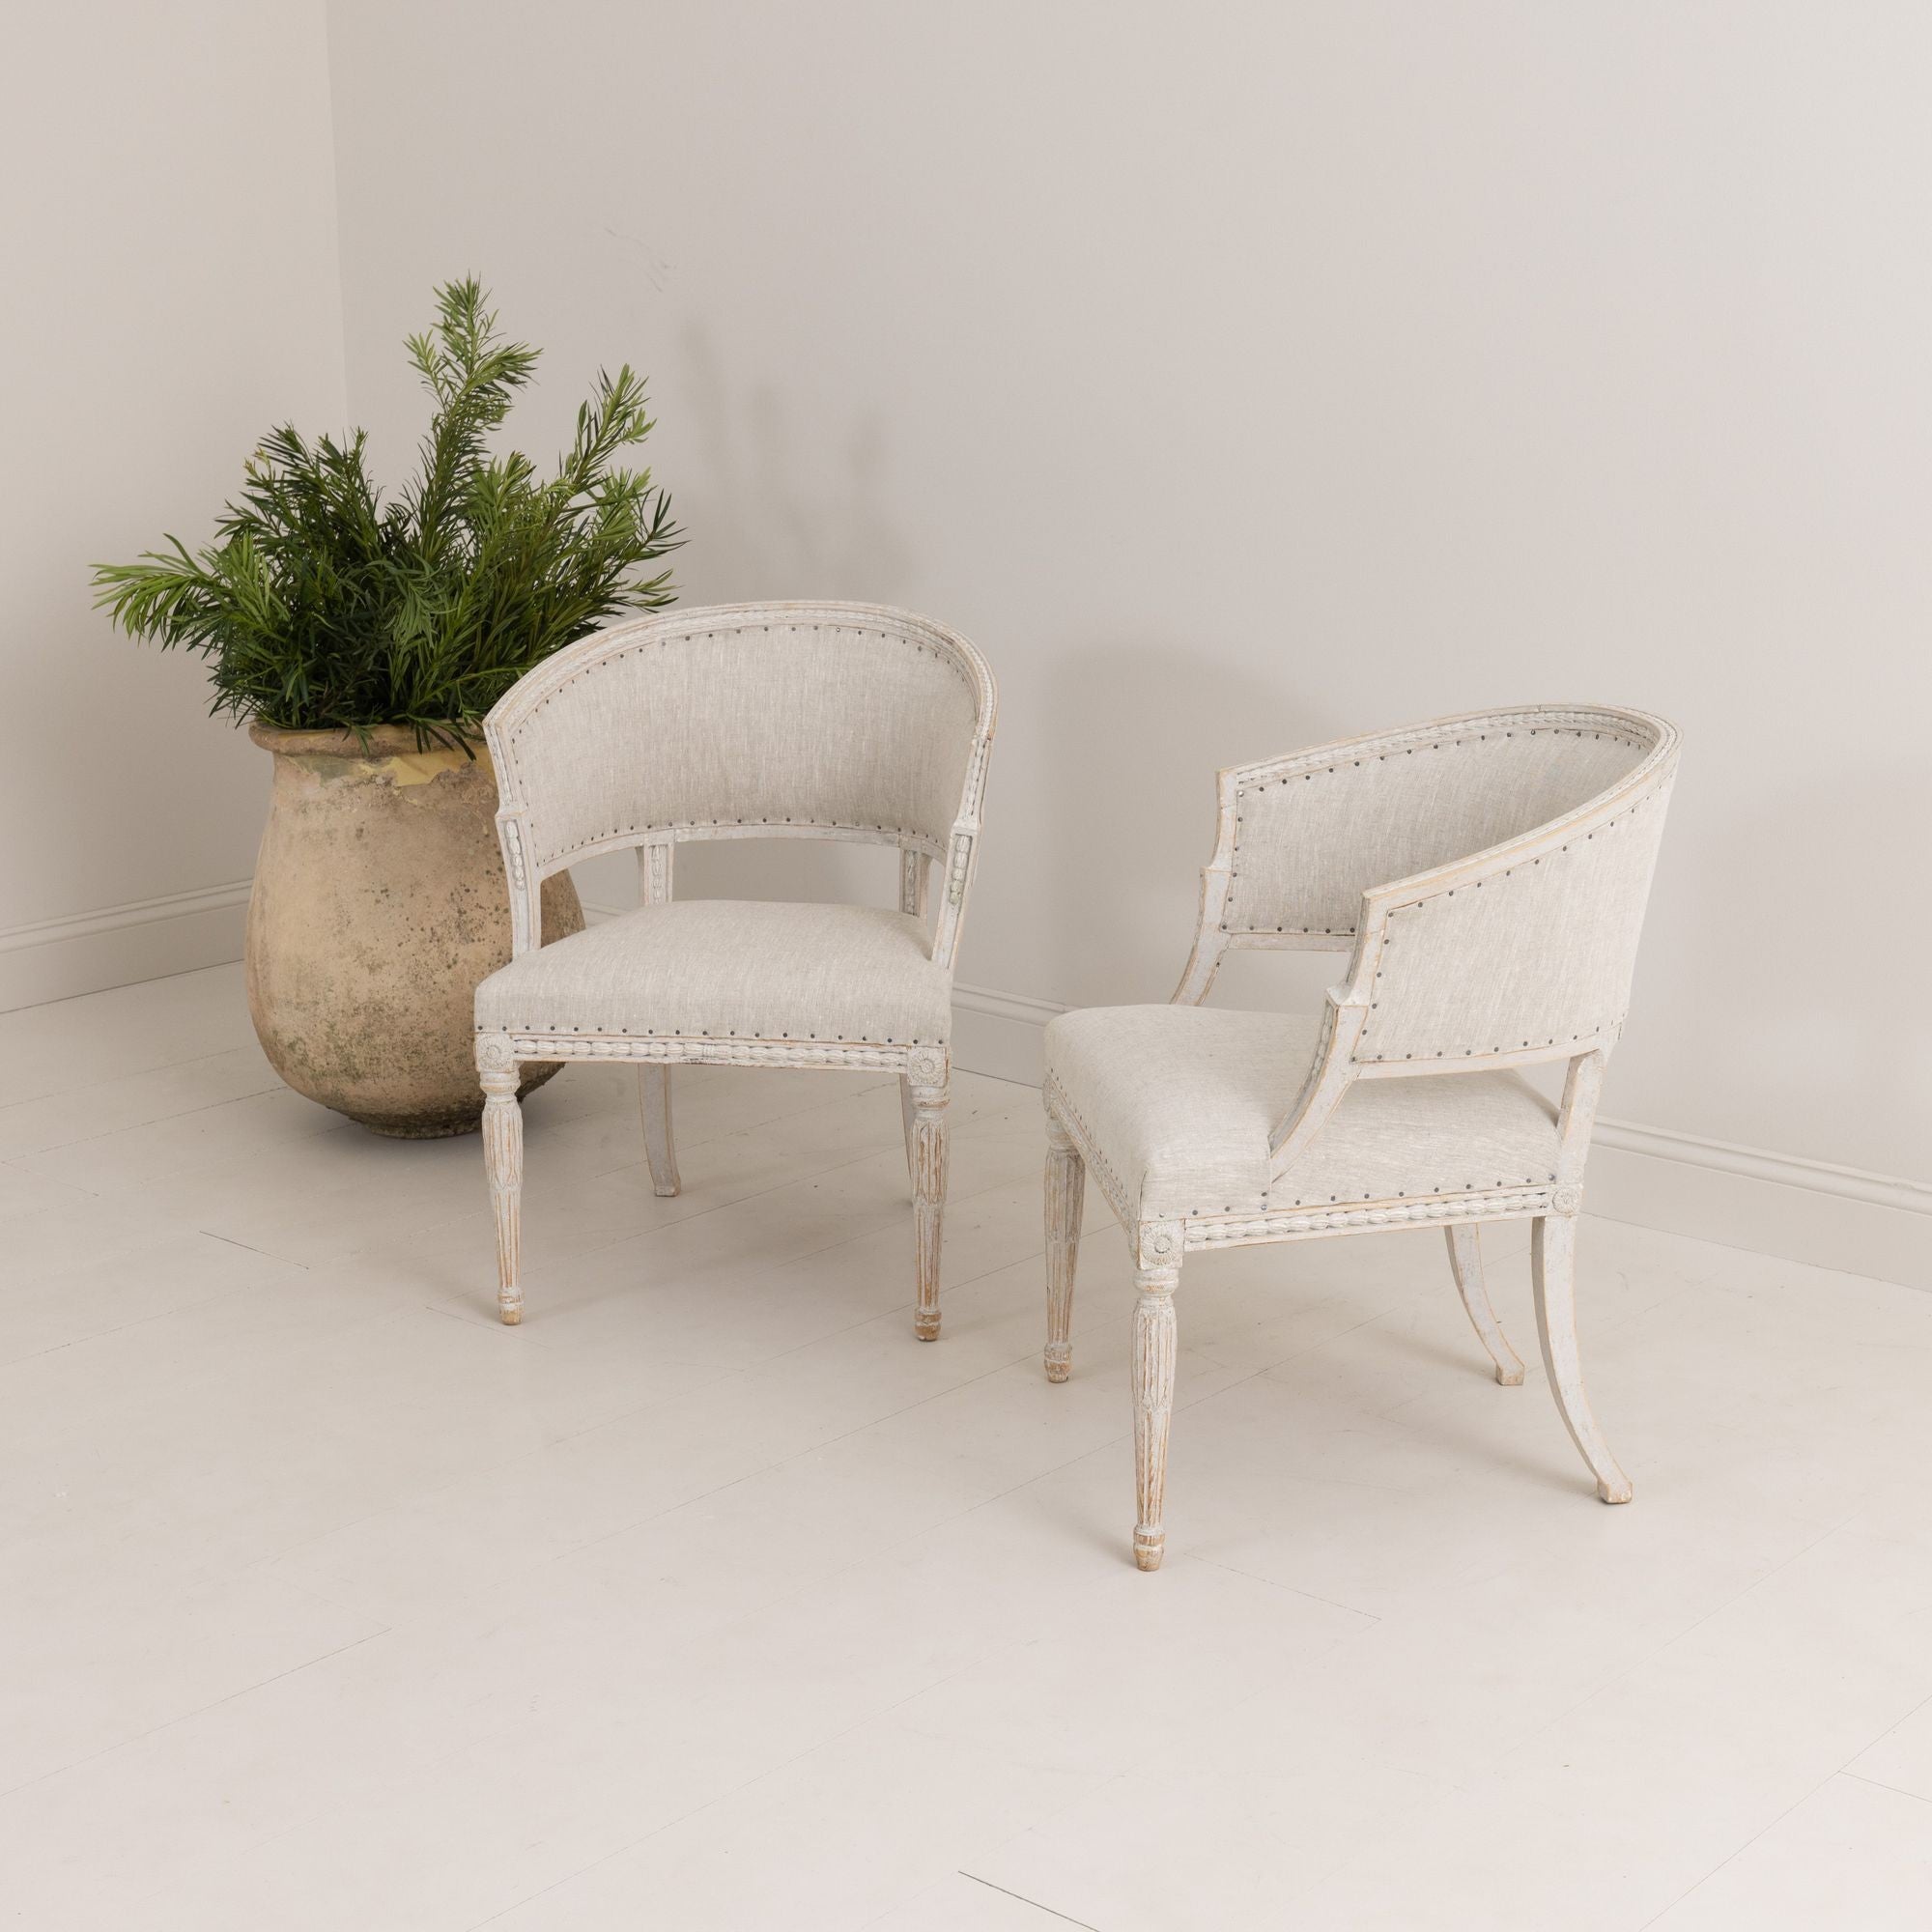 Paire de chaises suédoises à dossier classique de style gustavien avec détails décoratifs en plâtre, nouvellement tapissées de lin. Le dossier des chaises et le cadre de l'assise sont joliment sculptés de fleurs en cloche, les montants d'angle sont